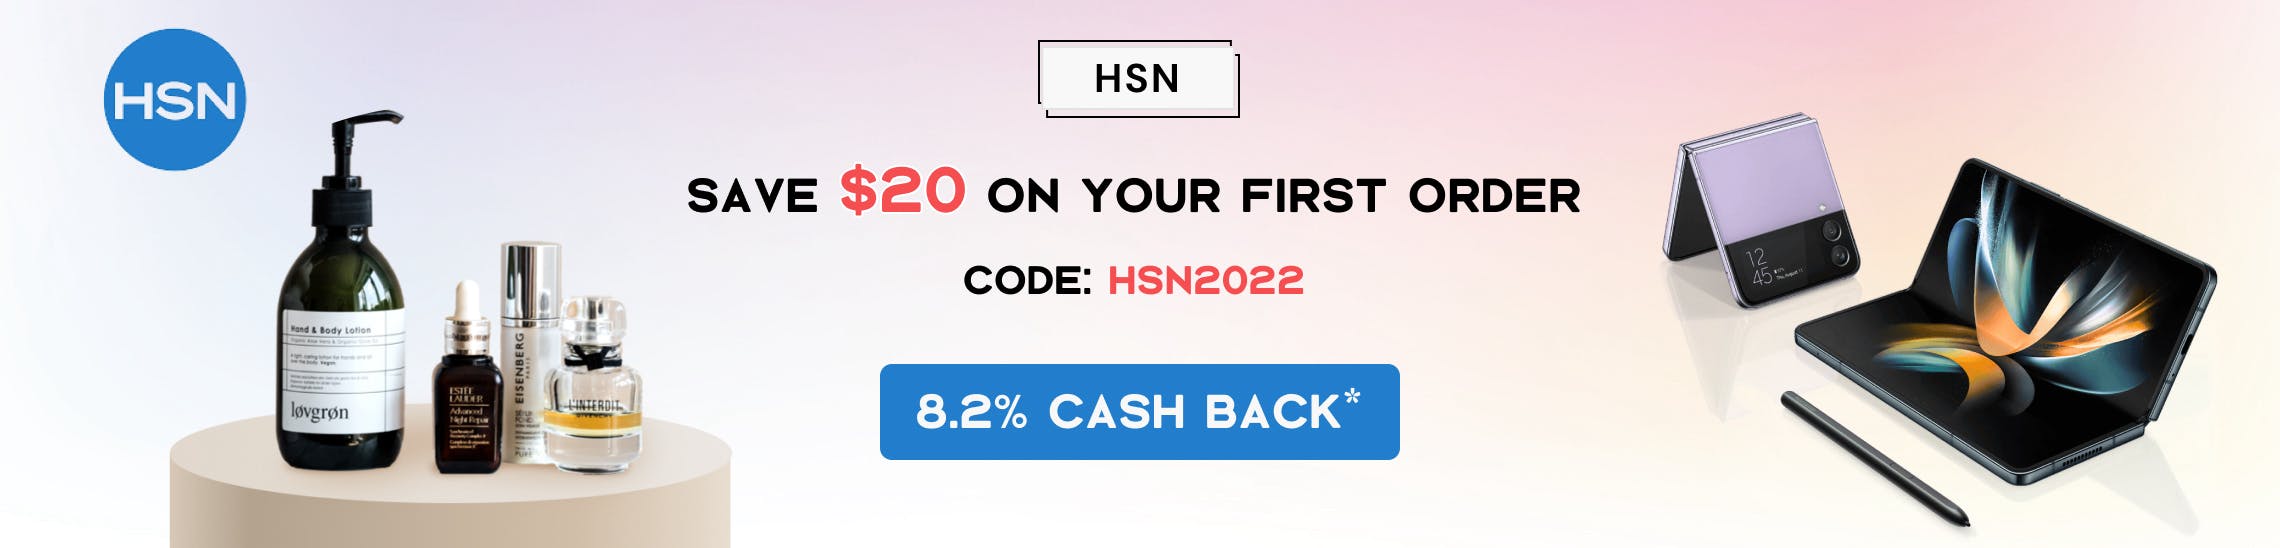 HSN Promo Codes & Cash Back